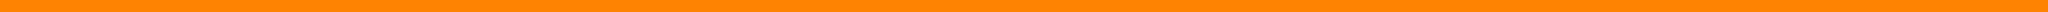 Oranjebar